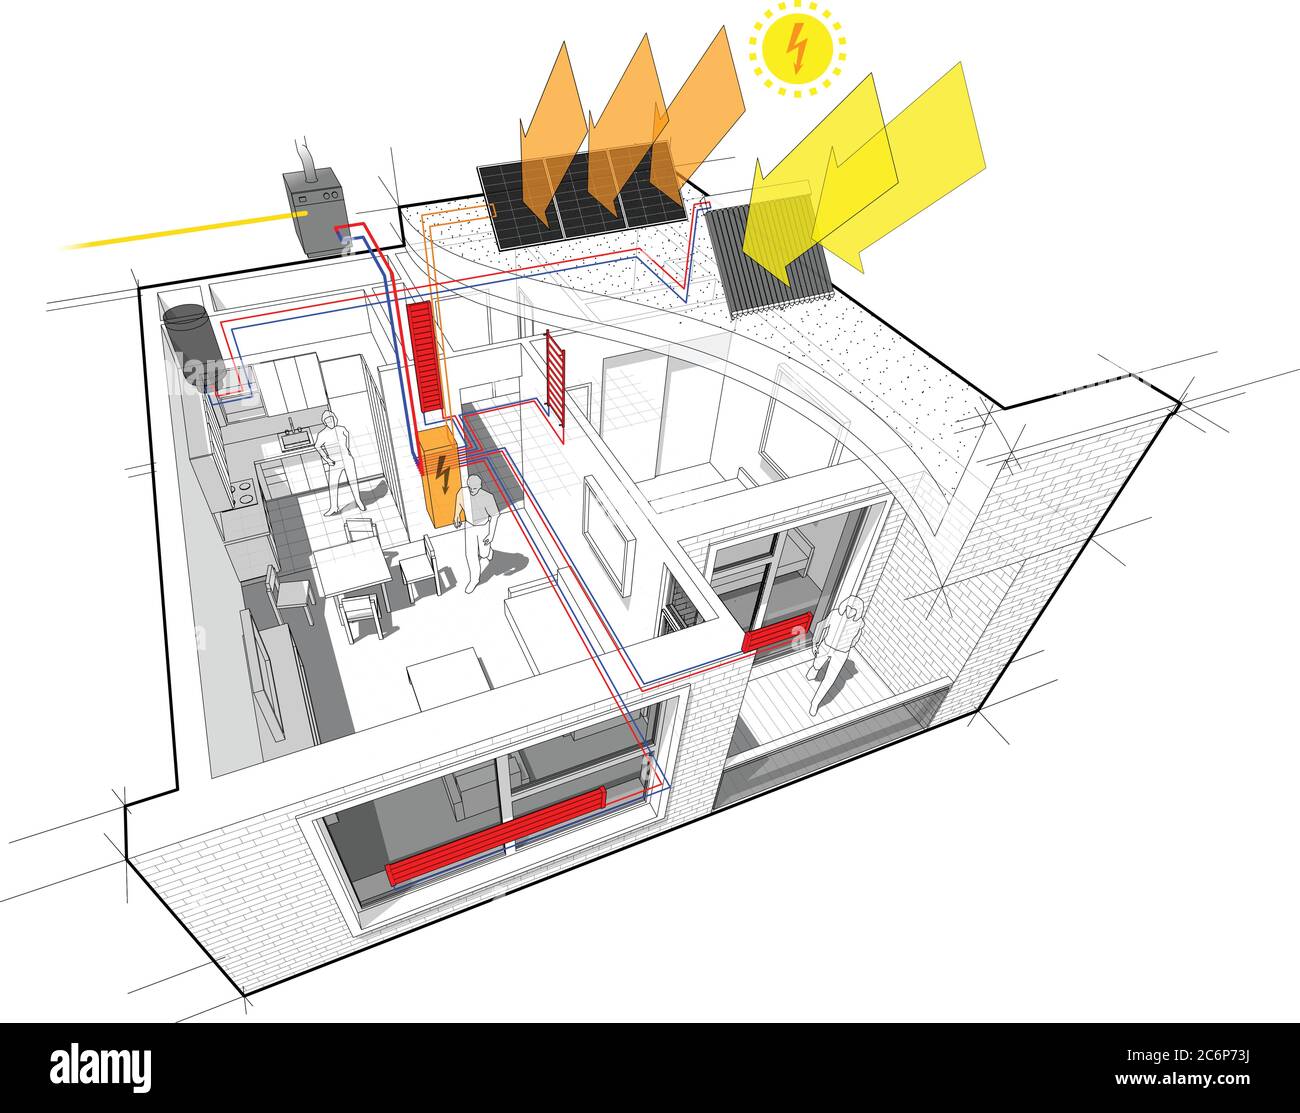 Schema di appartamenti con riscaldamento a radiatore e caldaia a gas e pannelli fotovoltaici e solari Illustrazione Vettoriale